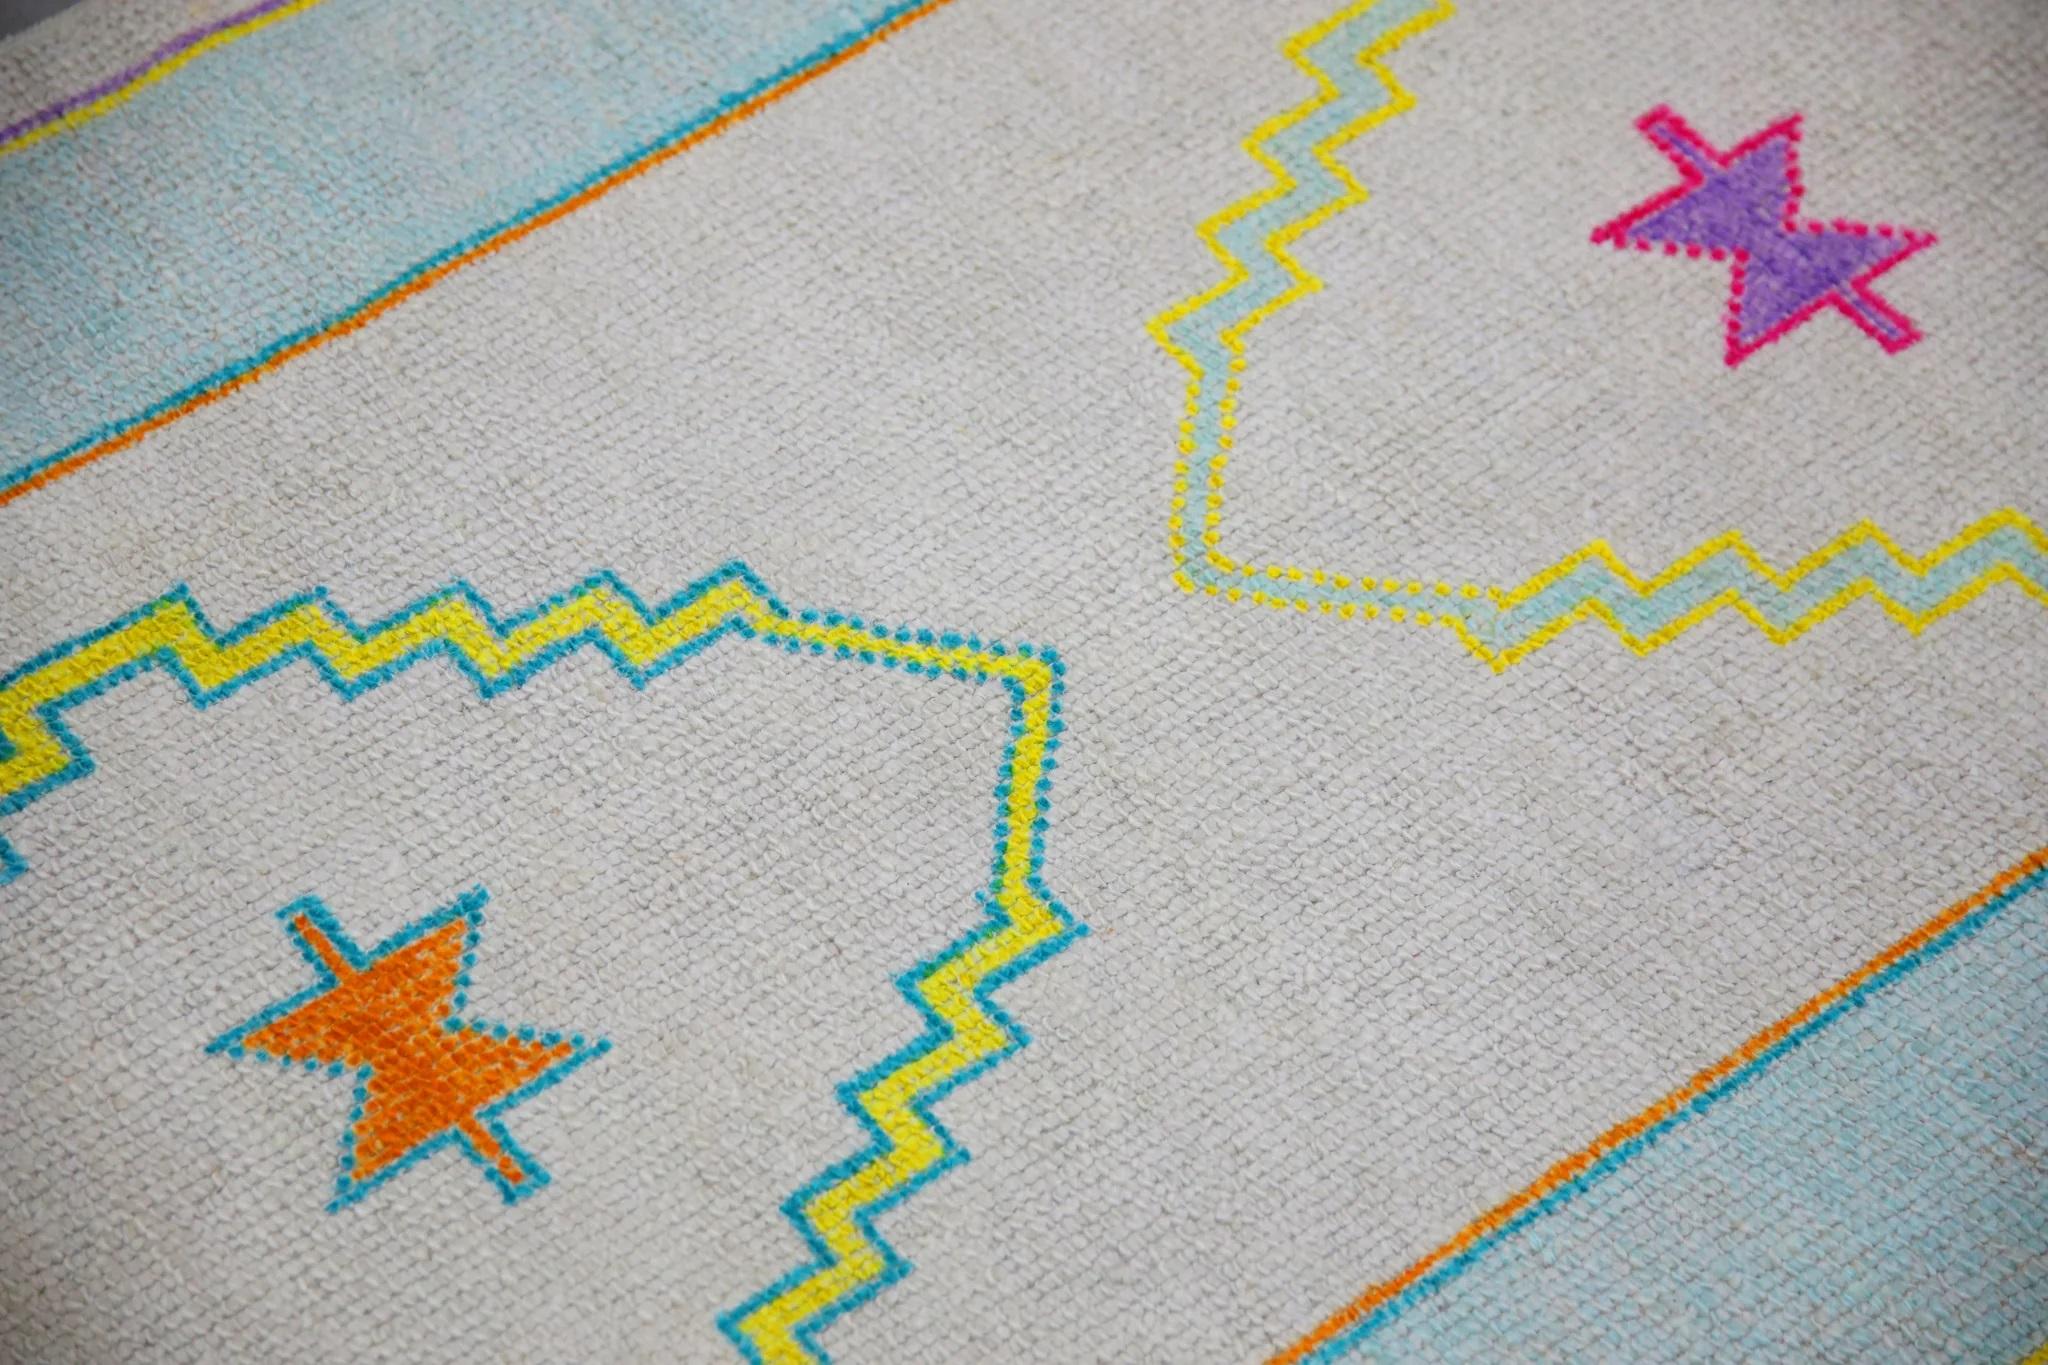 Ce tapis moderne turc Oushak est une œuvre d'art étonnante, tissée à la main selon des techniques traditionnelles par des artisans qualifiés. Le tapis présente des motifs complexes et une palette de couleurs douces obtenue grâce à l'utilisation de